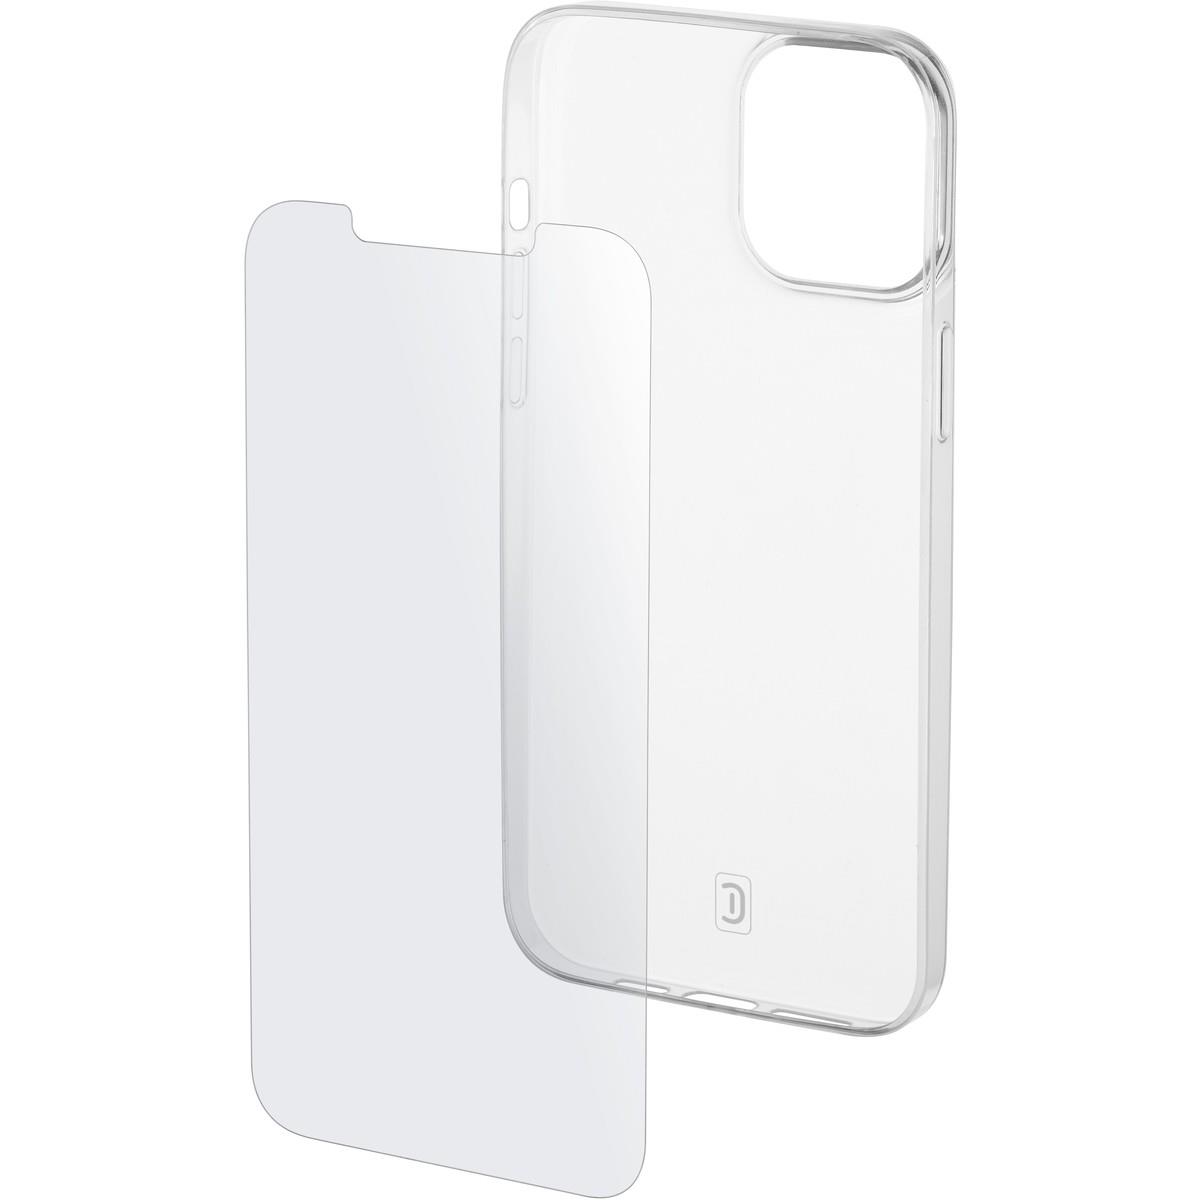 Set PROTECTION KIT aus Backcover und Schutzglas für Apple iPhone 13